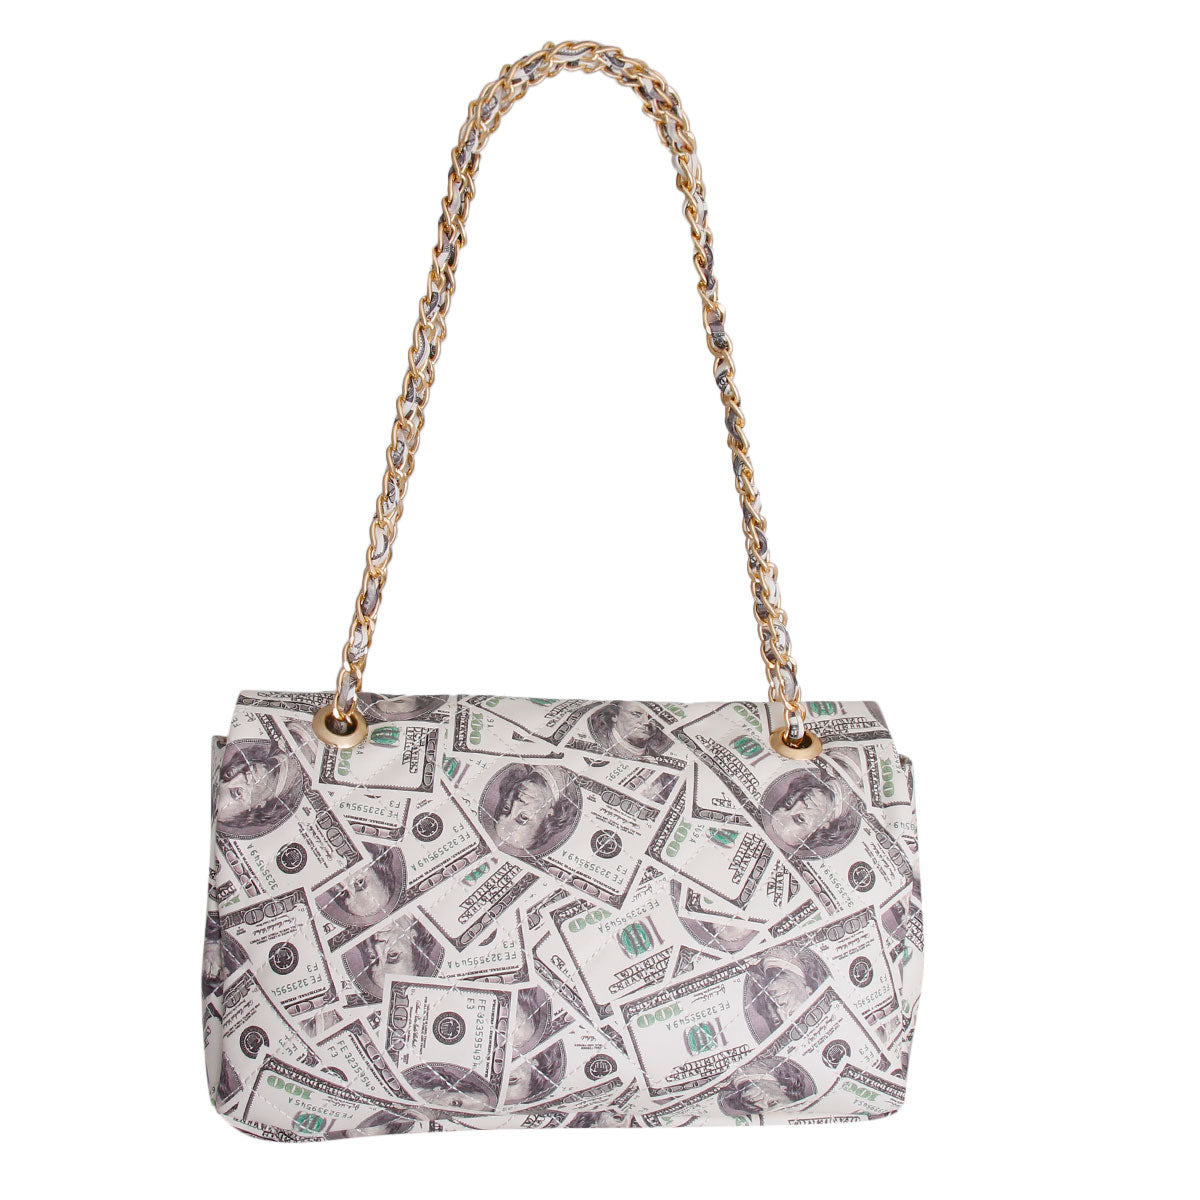 BILLION Dollars Quilted Handbag